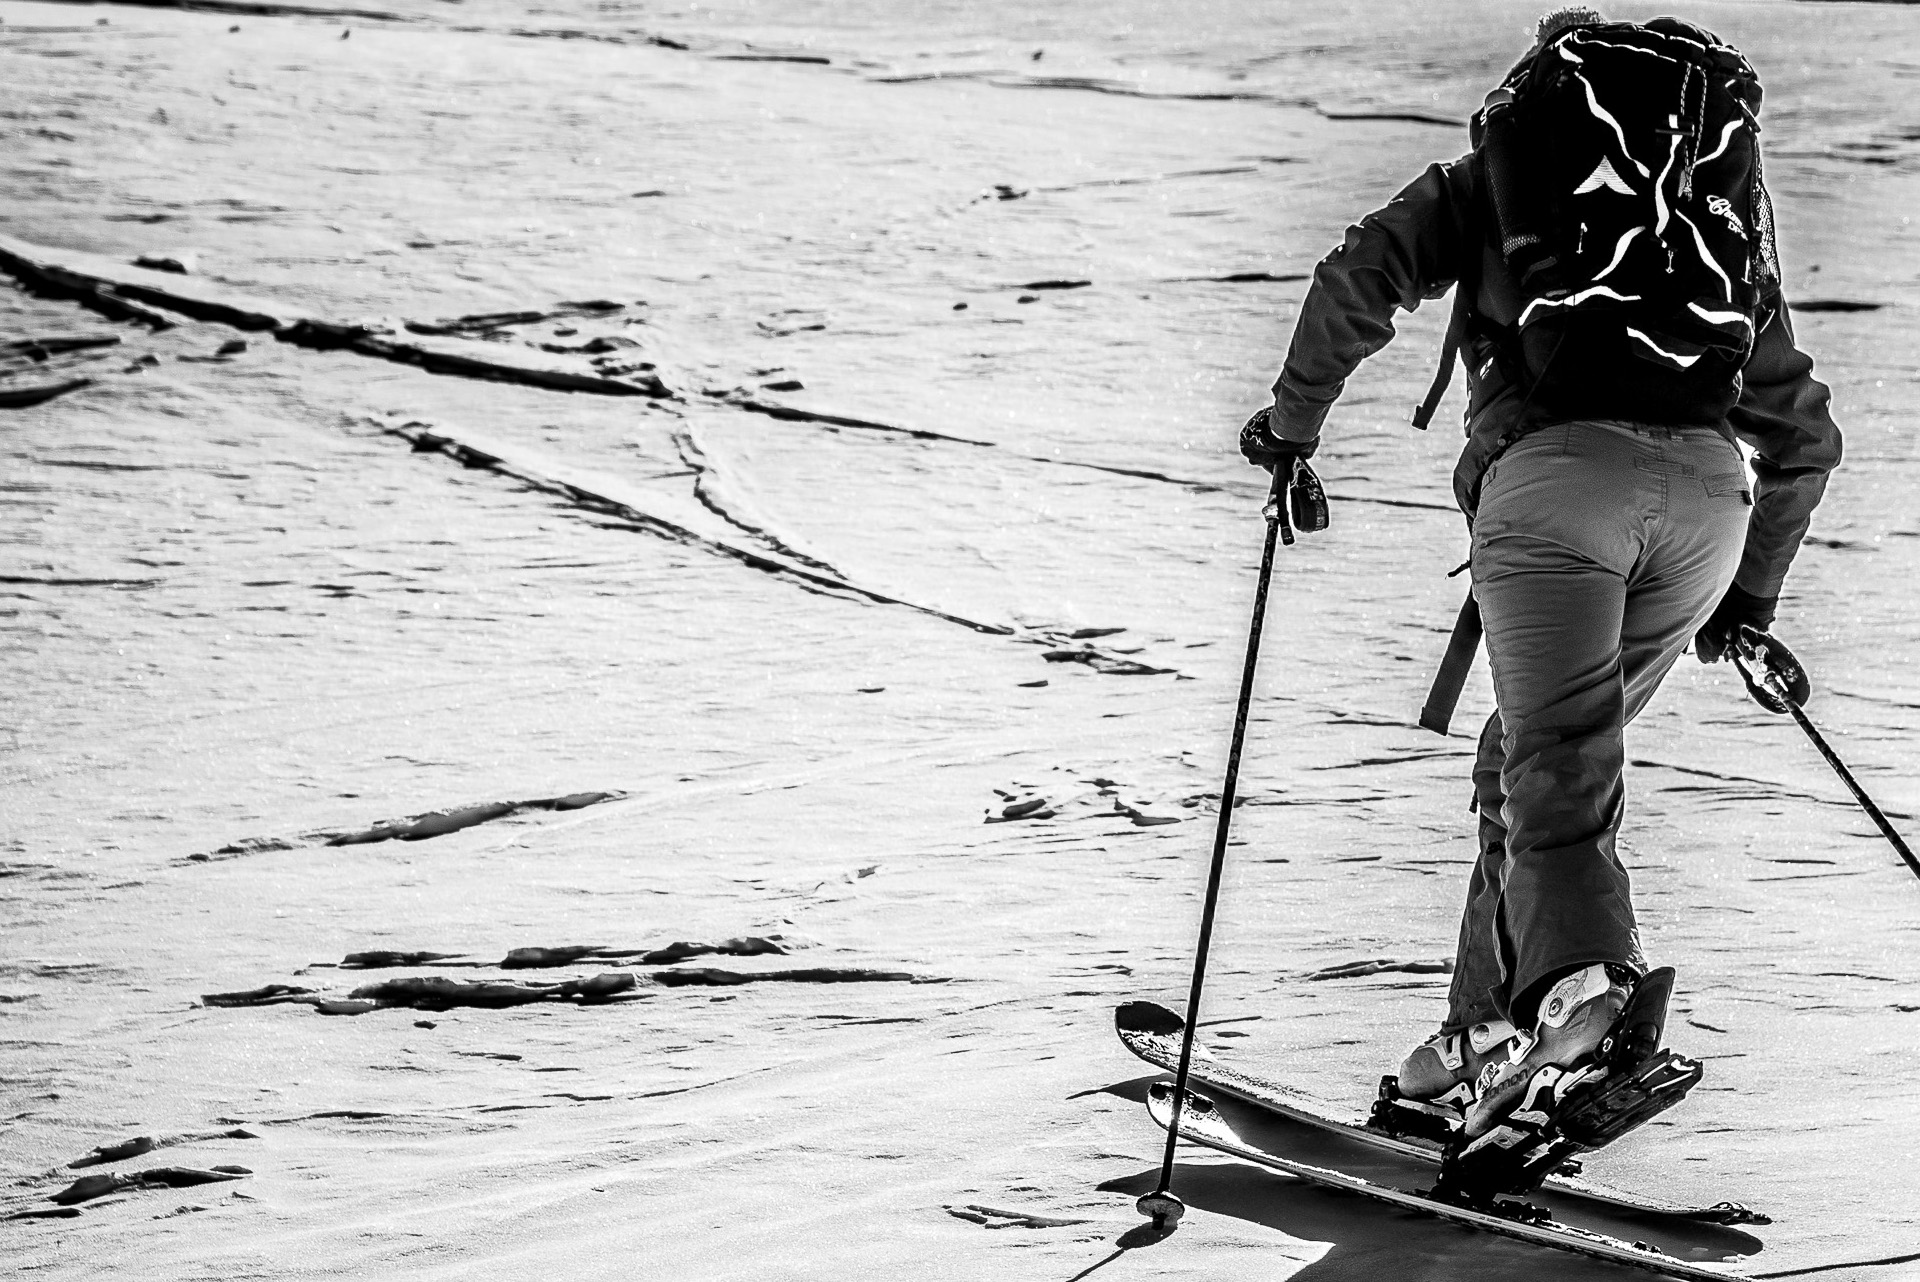 test-ski-de-rando-noir-etr-blanc-465122